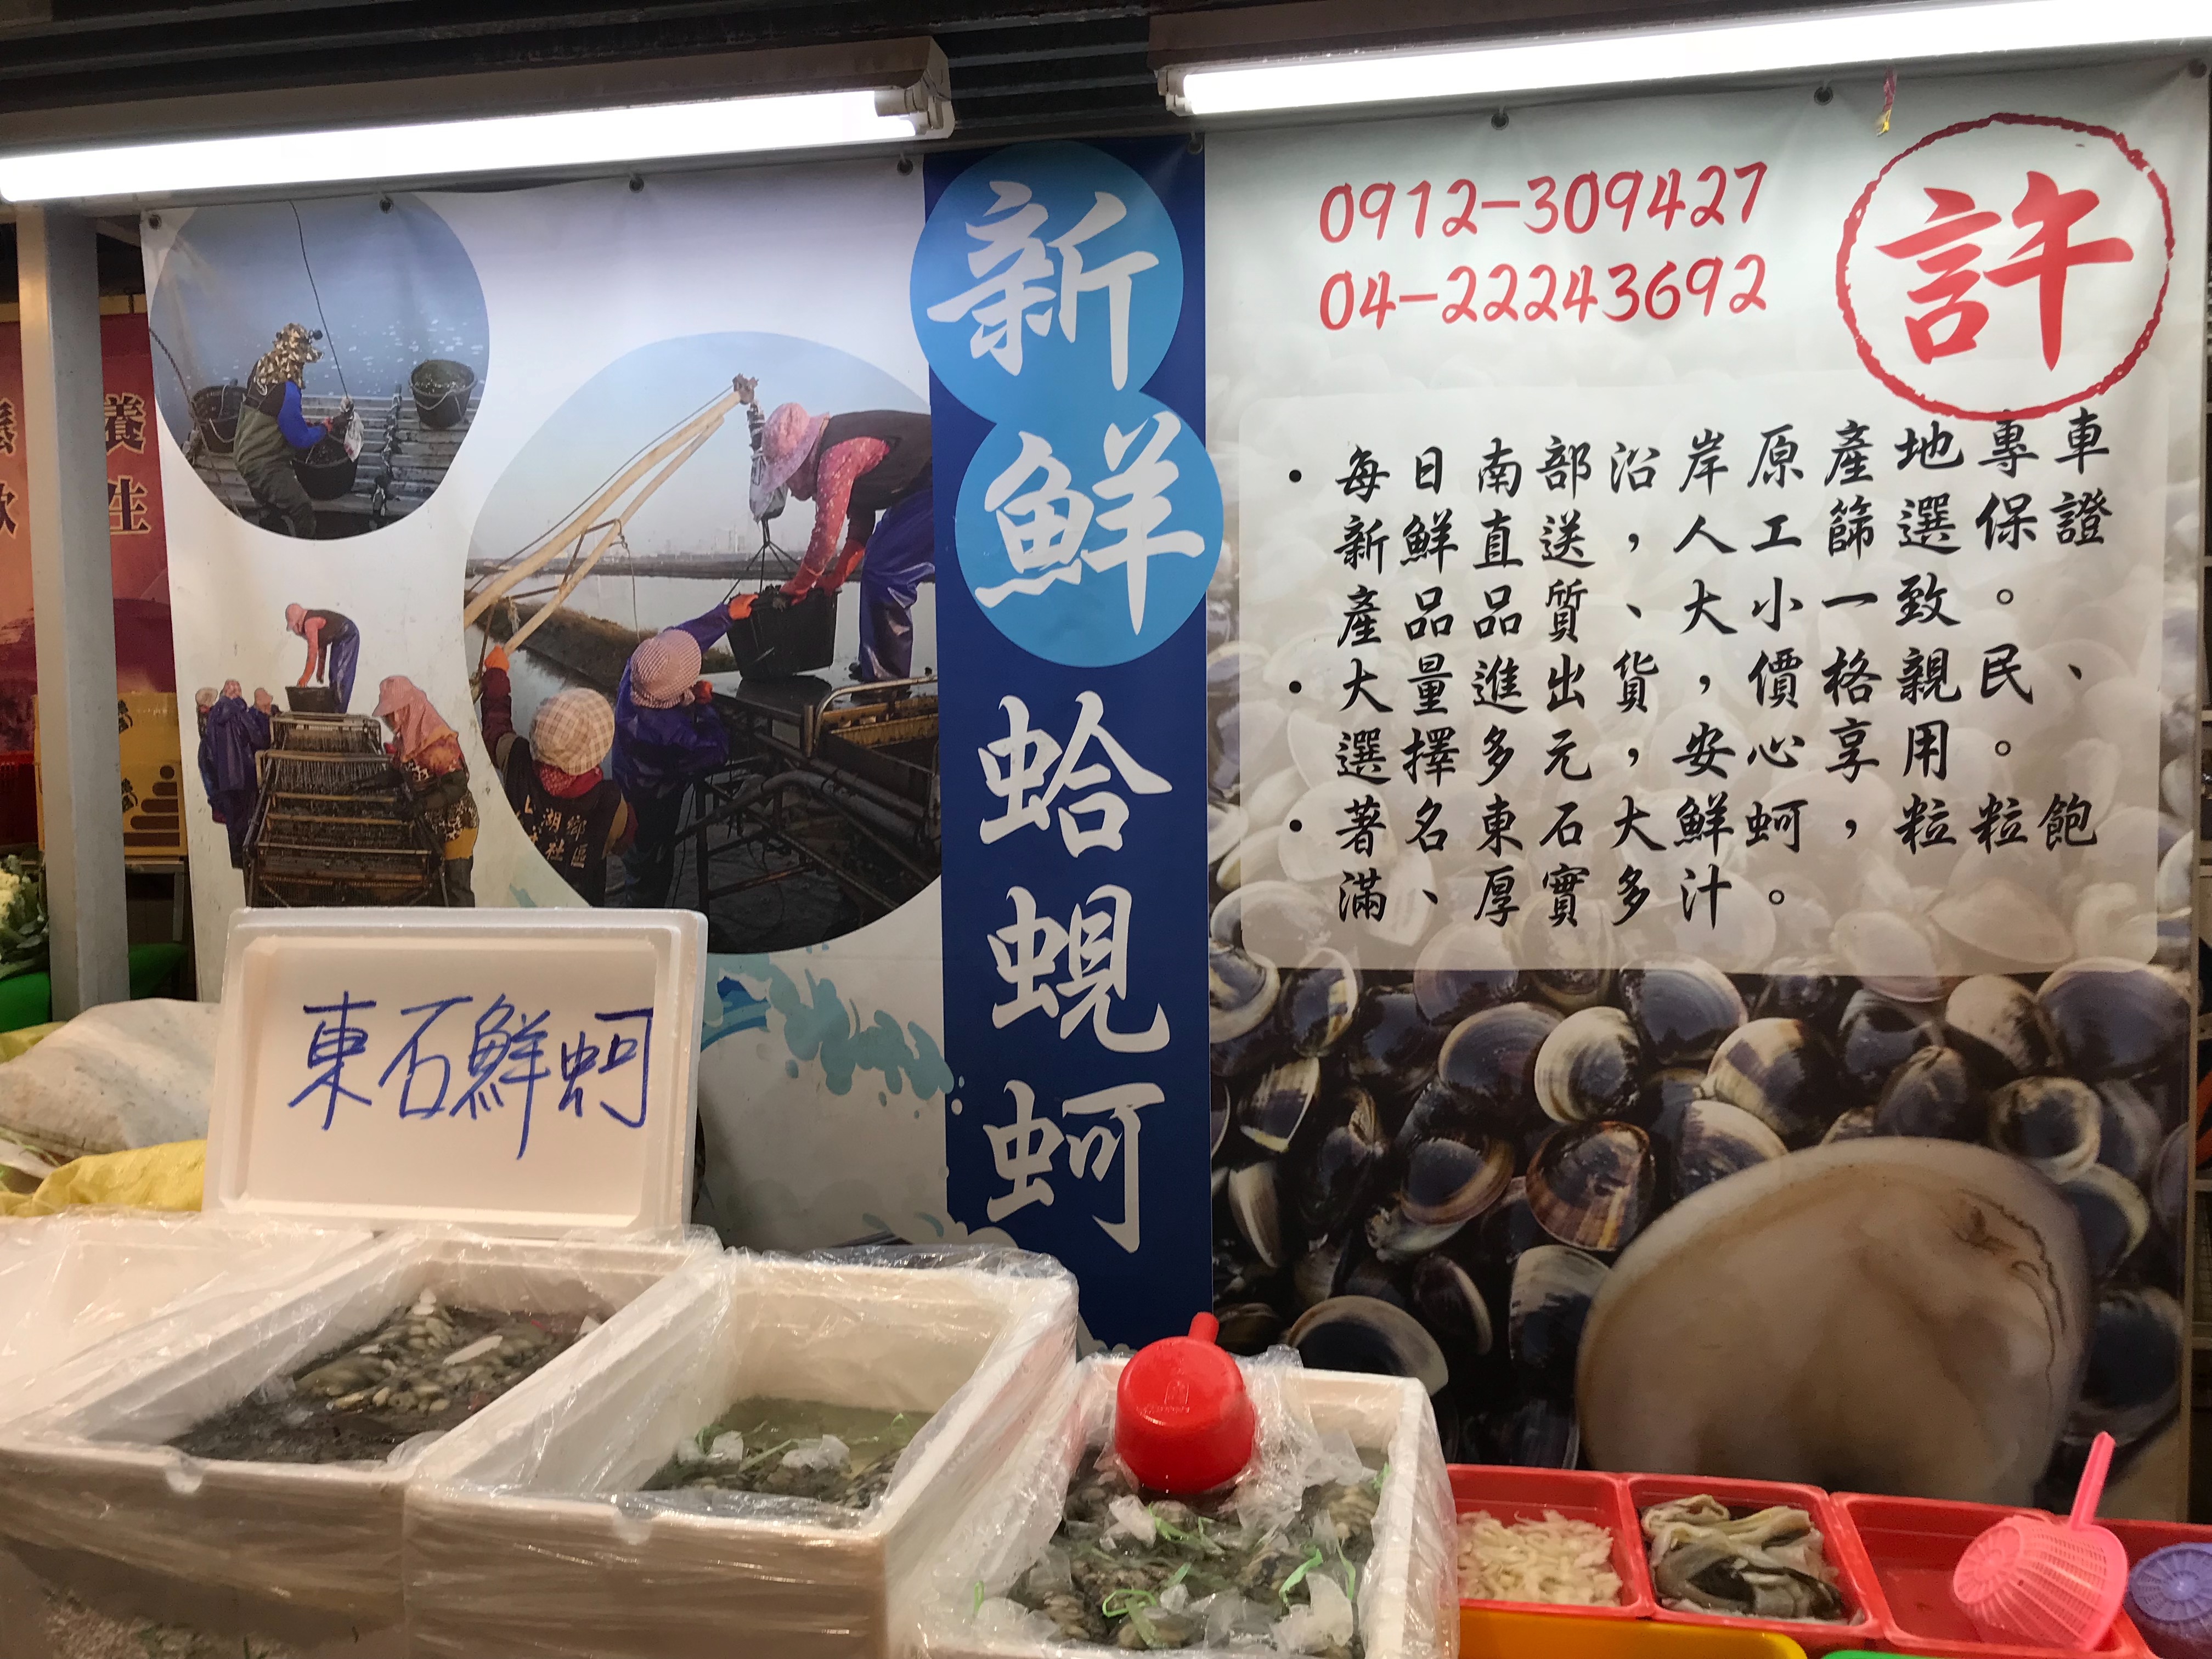 許 蛤、蜆、鮮蚵水產批發零售